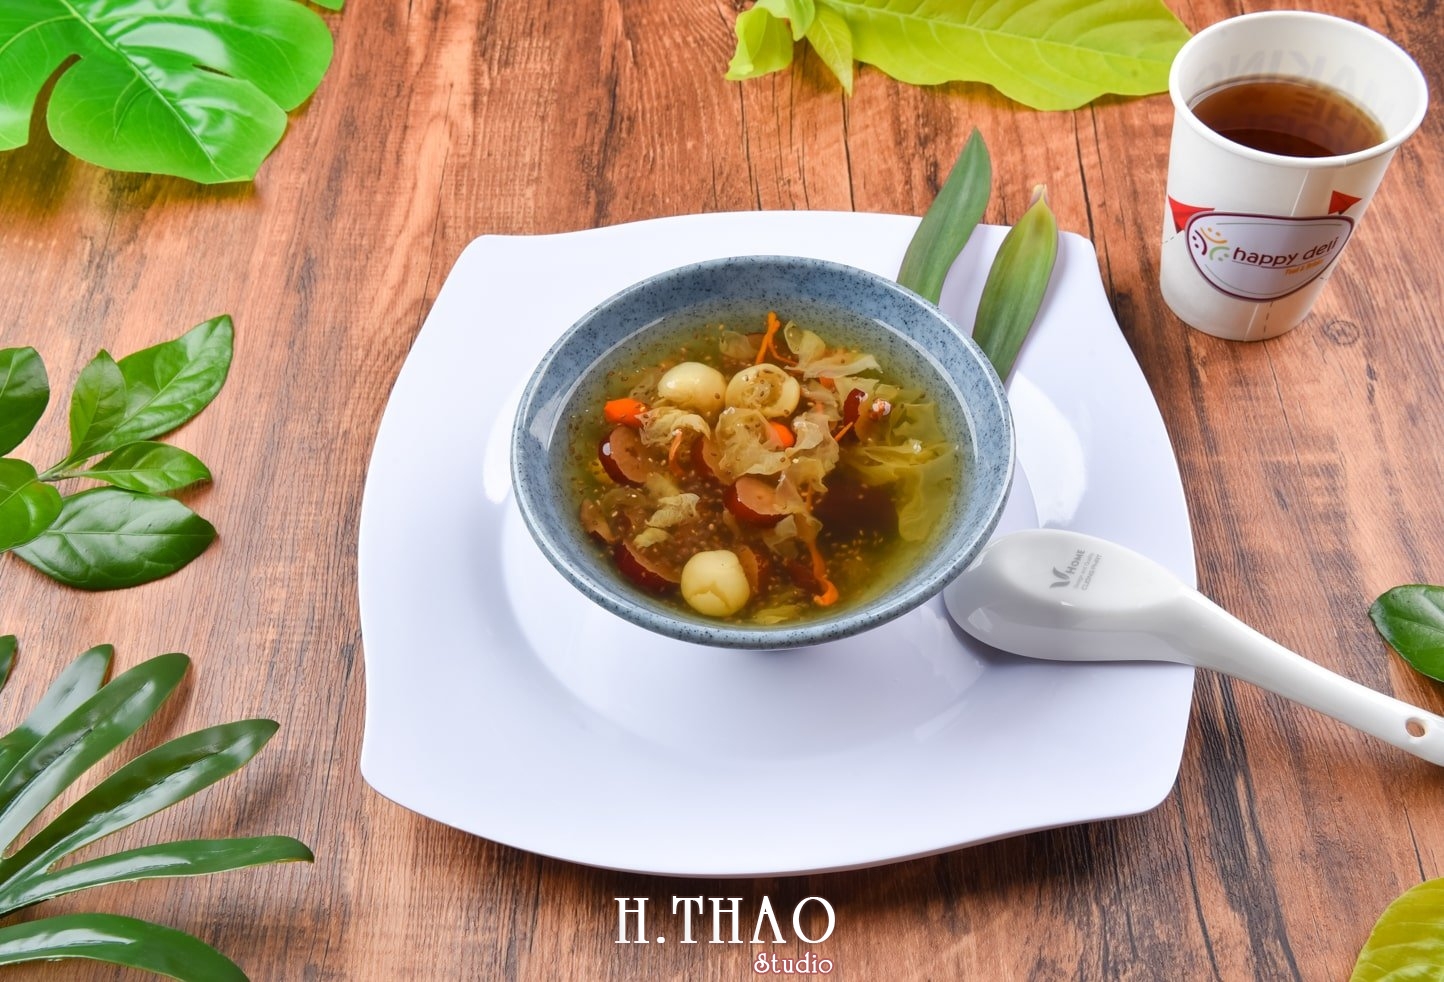 Anh food layout 2 min - Dịch vụ chụp ảnh đồ ăn đẹp, giá rẻ tại TpHCM - HThao Studio